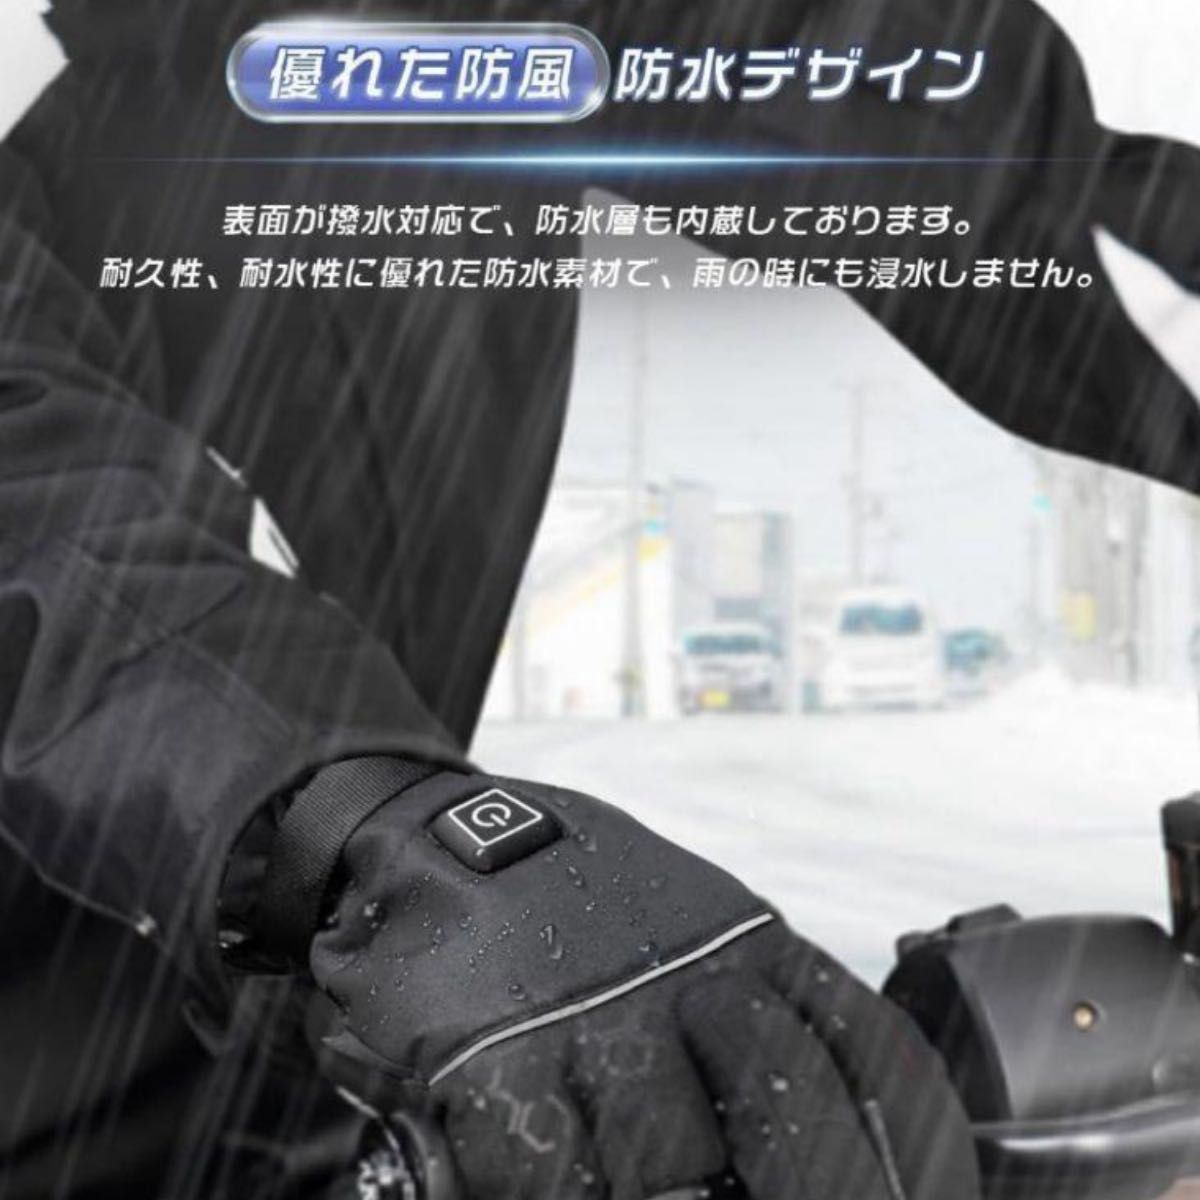 電熱グローブ バイク用 5000mAhバッテリー付き 電熱手袋厚手 加熱グローブ